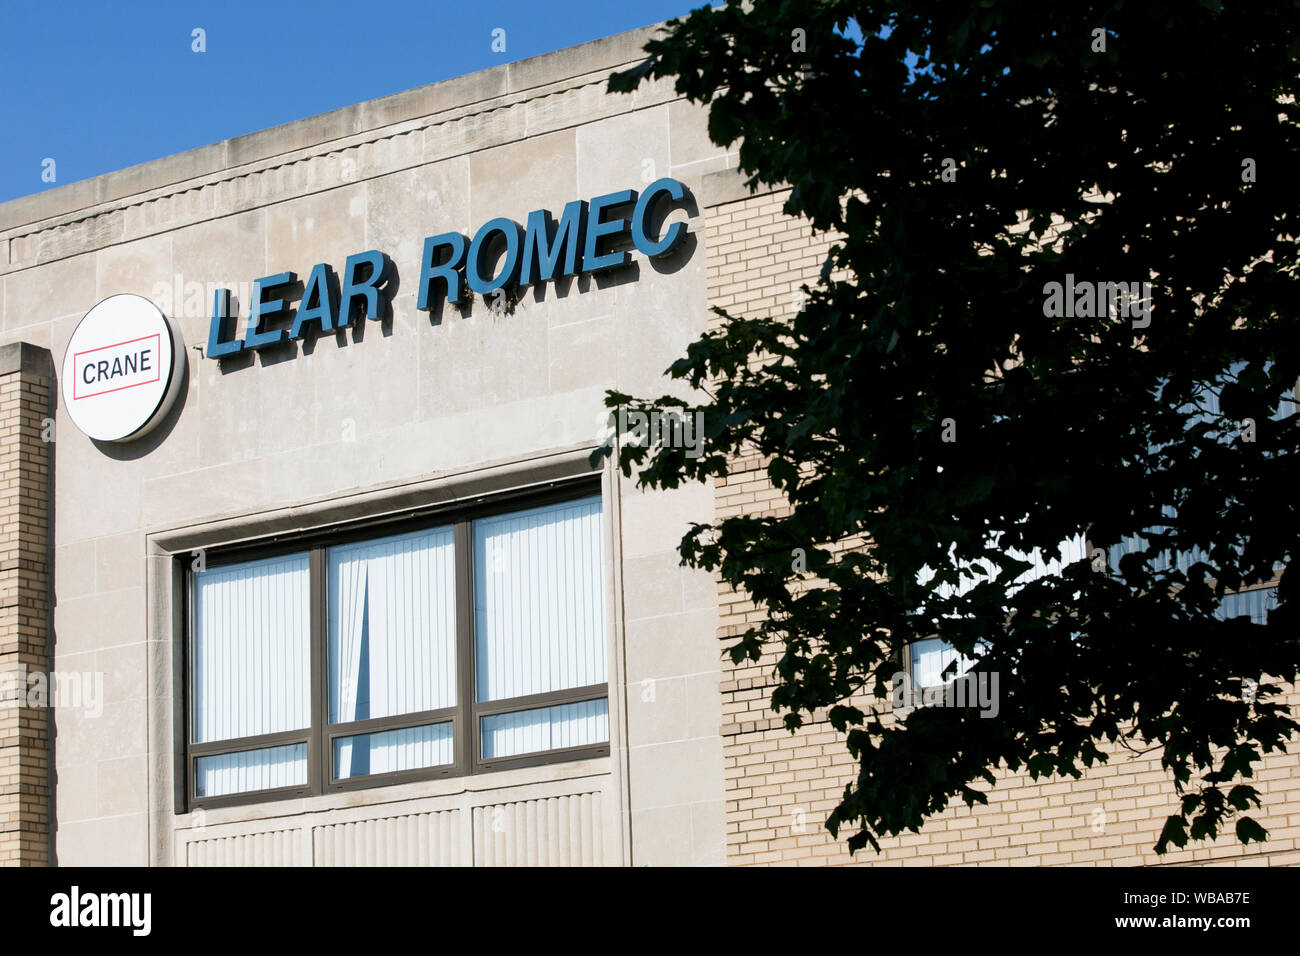 Un logo segno al di fuori della sede di Lear Romec, una filiale della società di gru, in Elyria, Ohio, 11 agosto 2019. Foto Stock